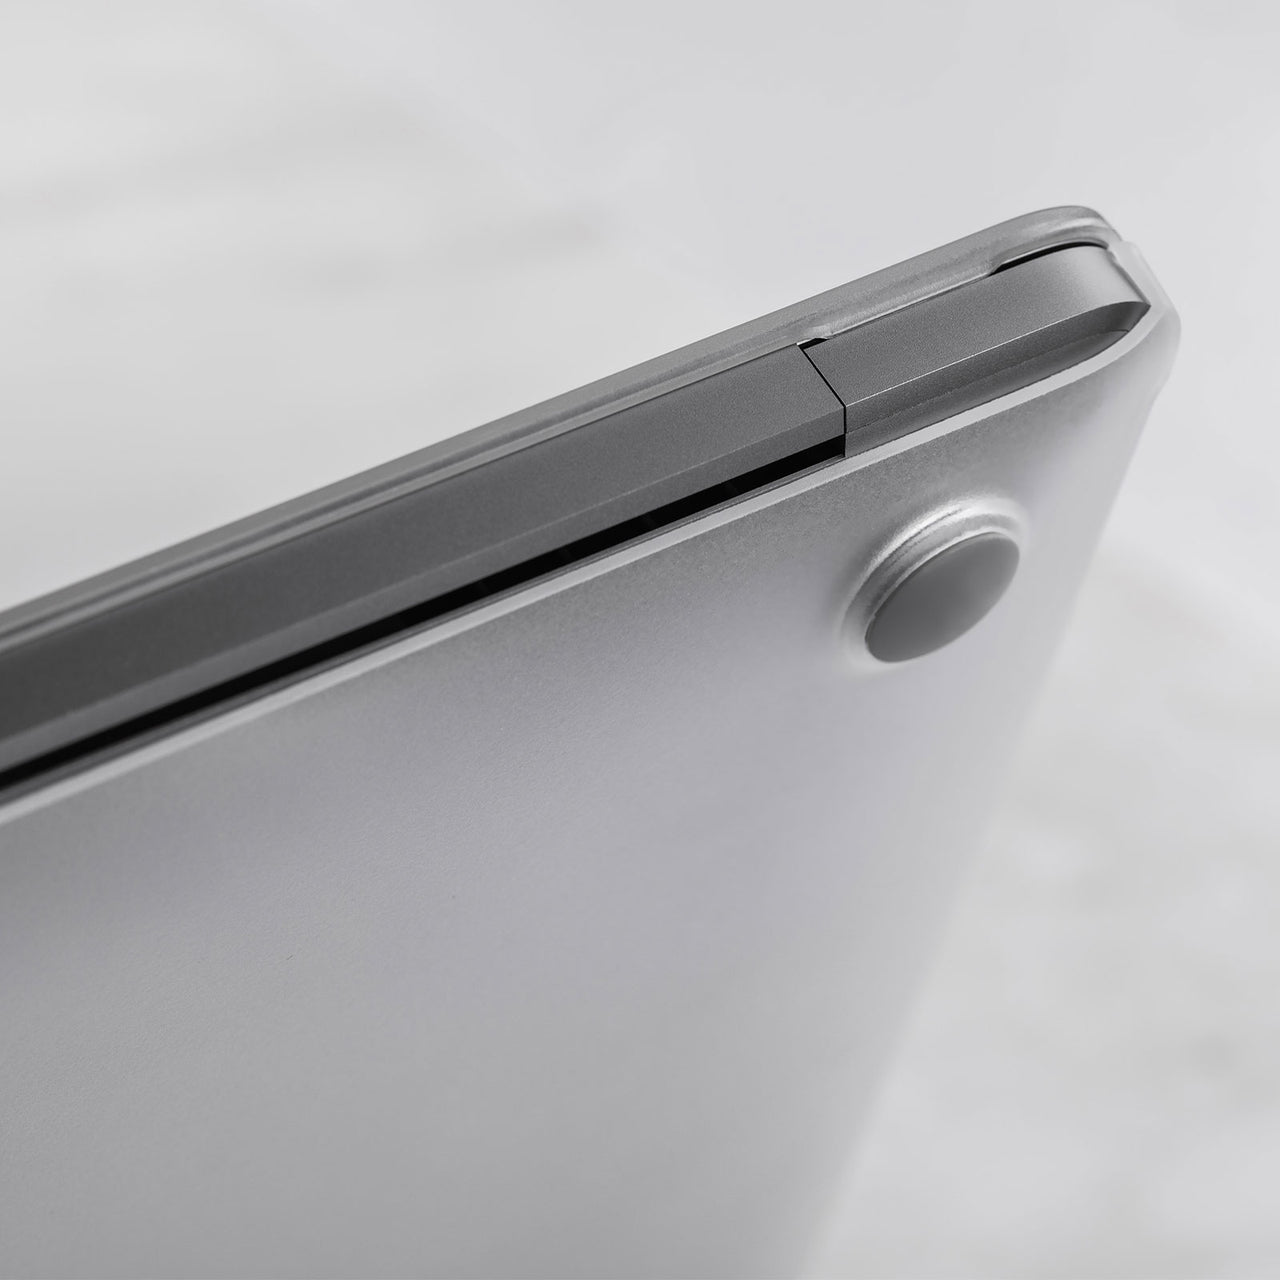 Moshi iGlaze for MacBook Air 13 (Thunderbolt 3/USB-C) - Transparent